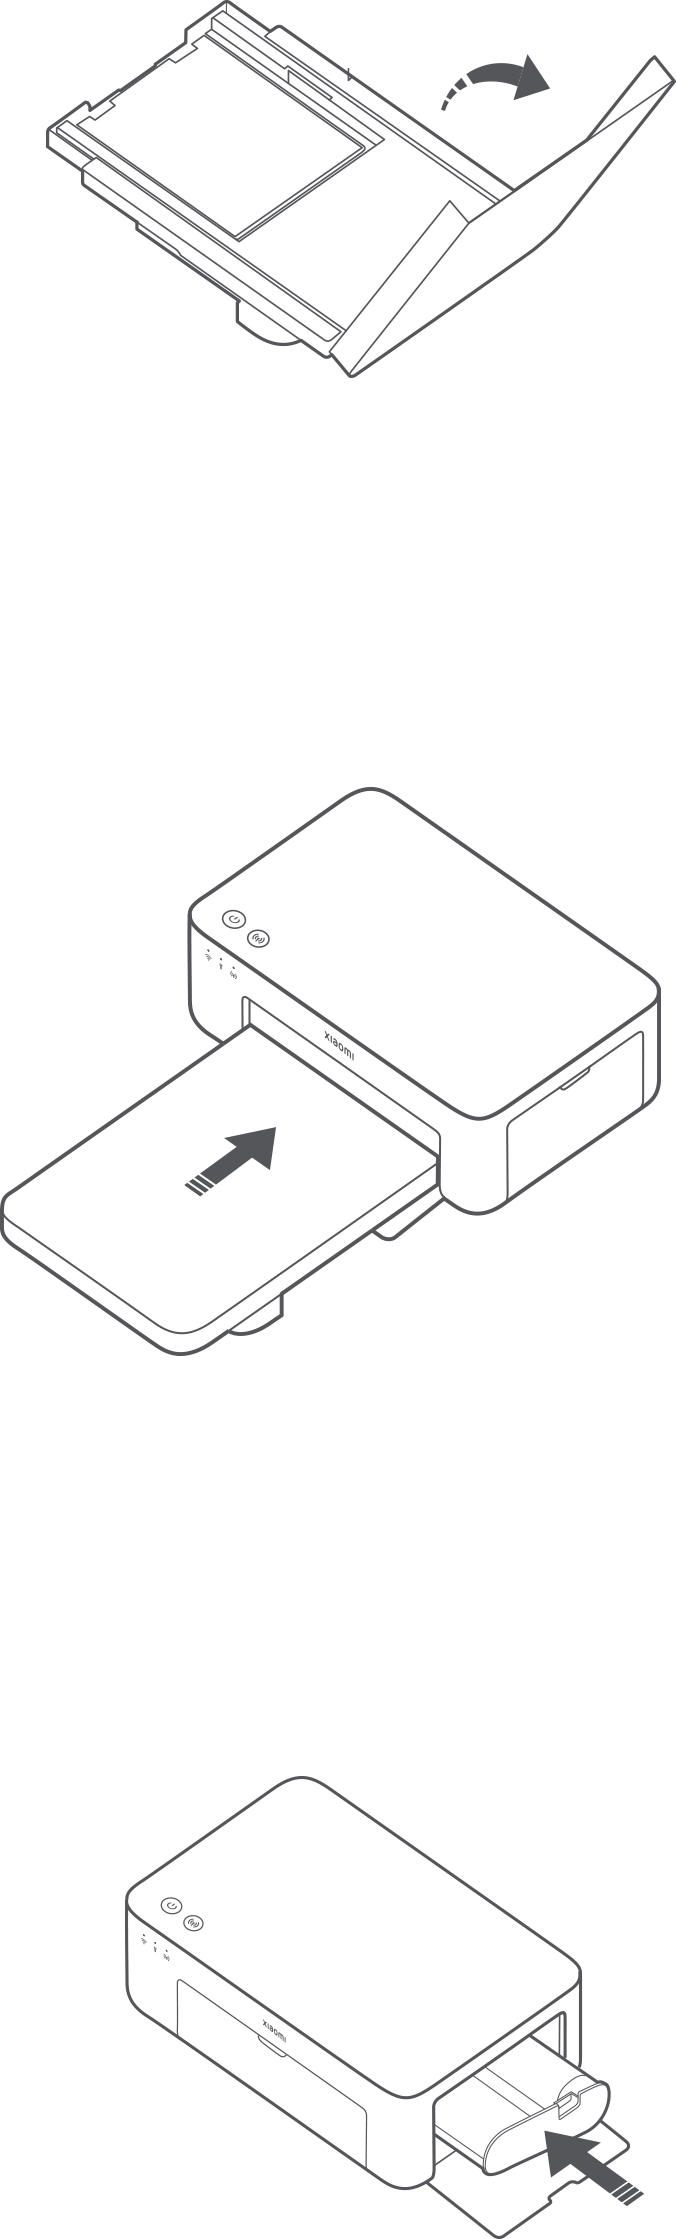 Xiaomi Mi Imprimante photo portable Instant 1S - Papier (6 pouces, 40  feuilles - Slovaquie, Produits Neufs - Plate-forme de vente en gros